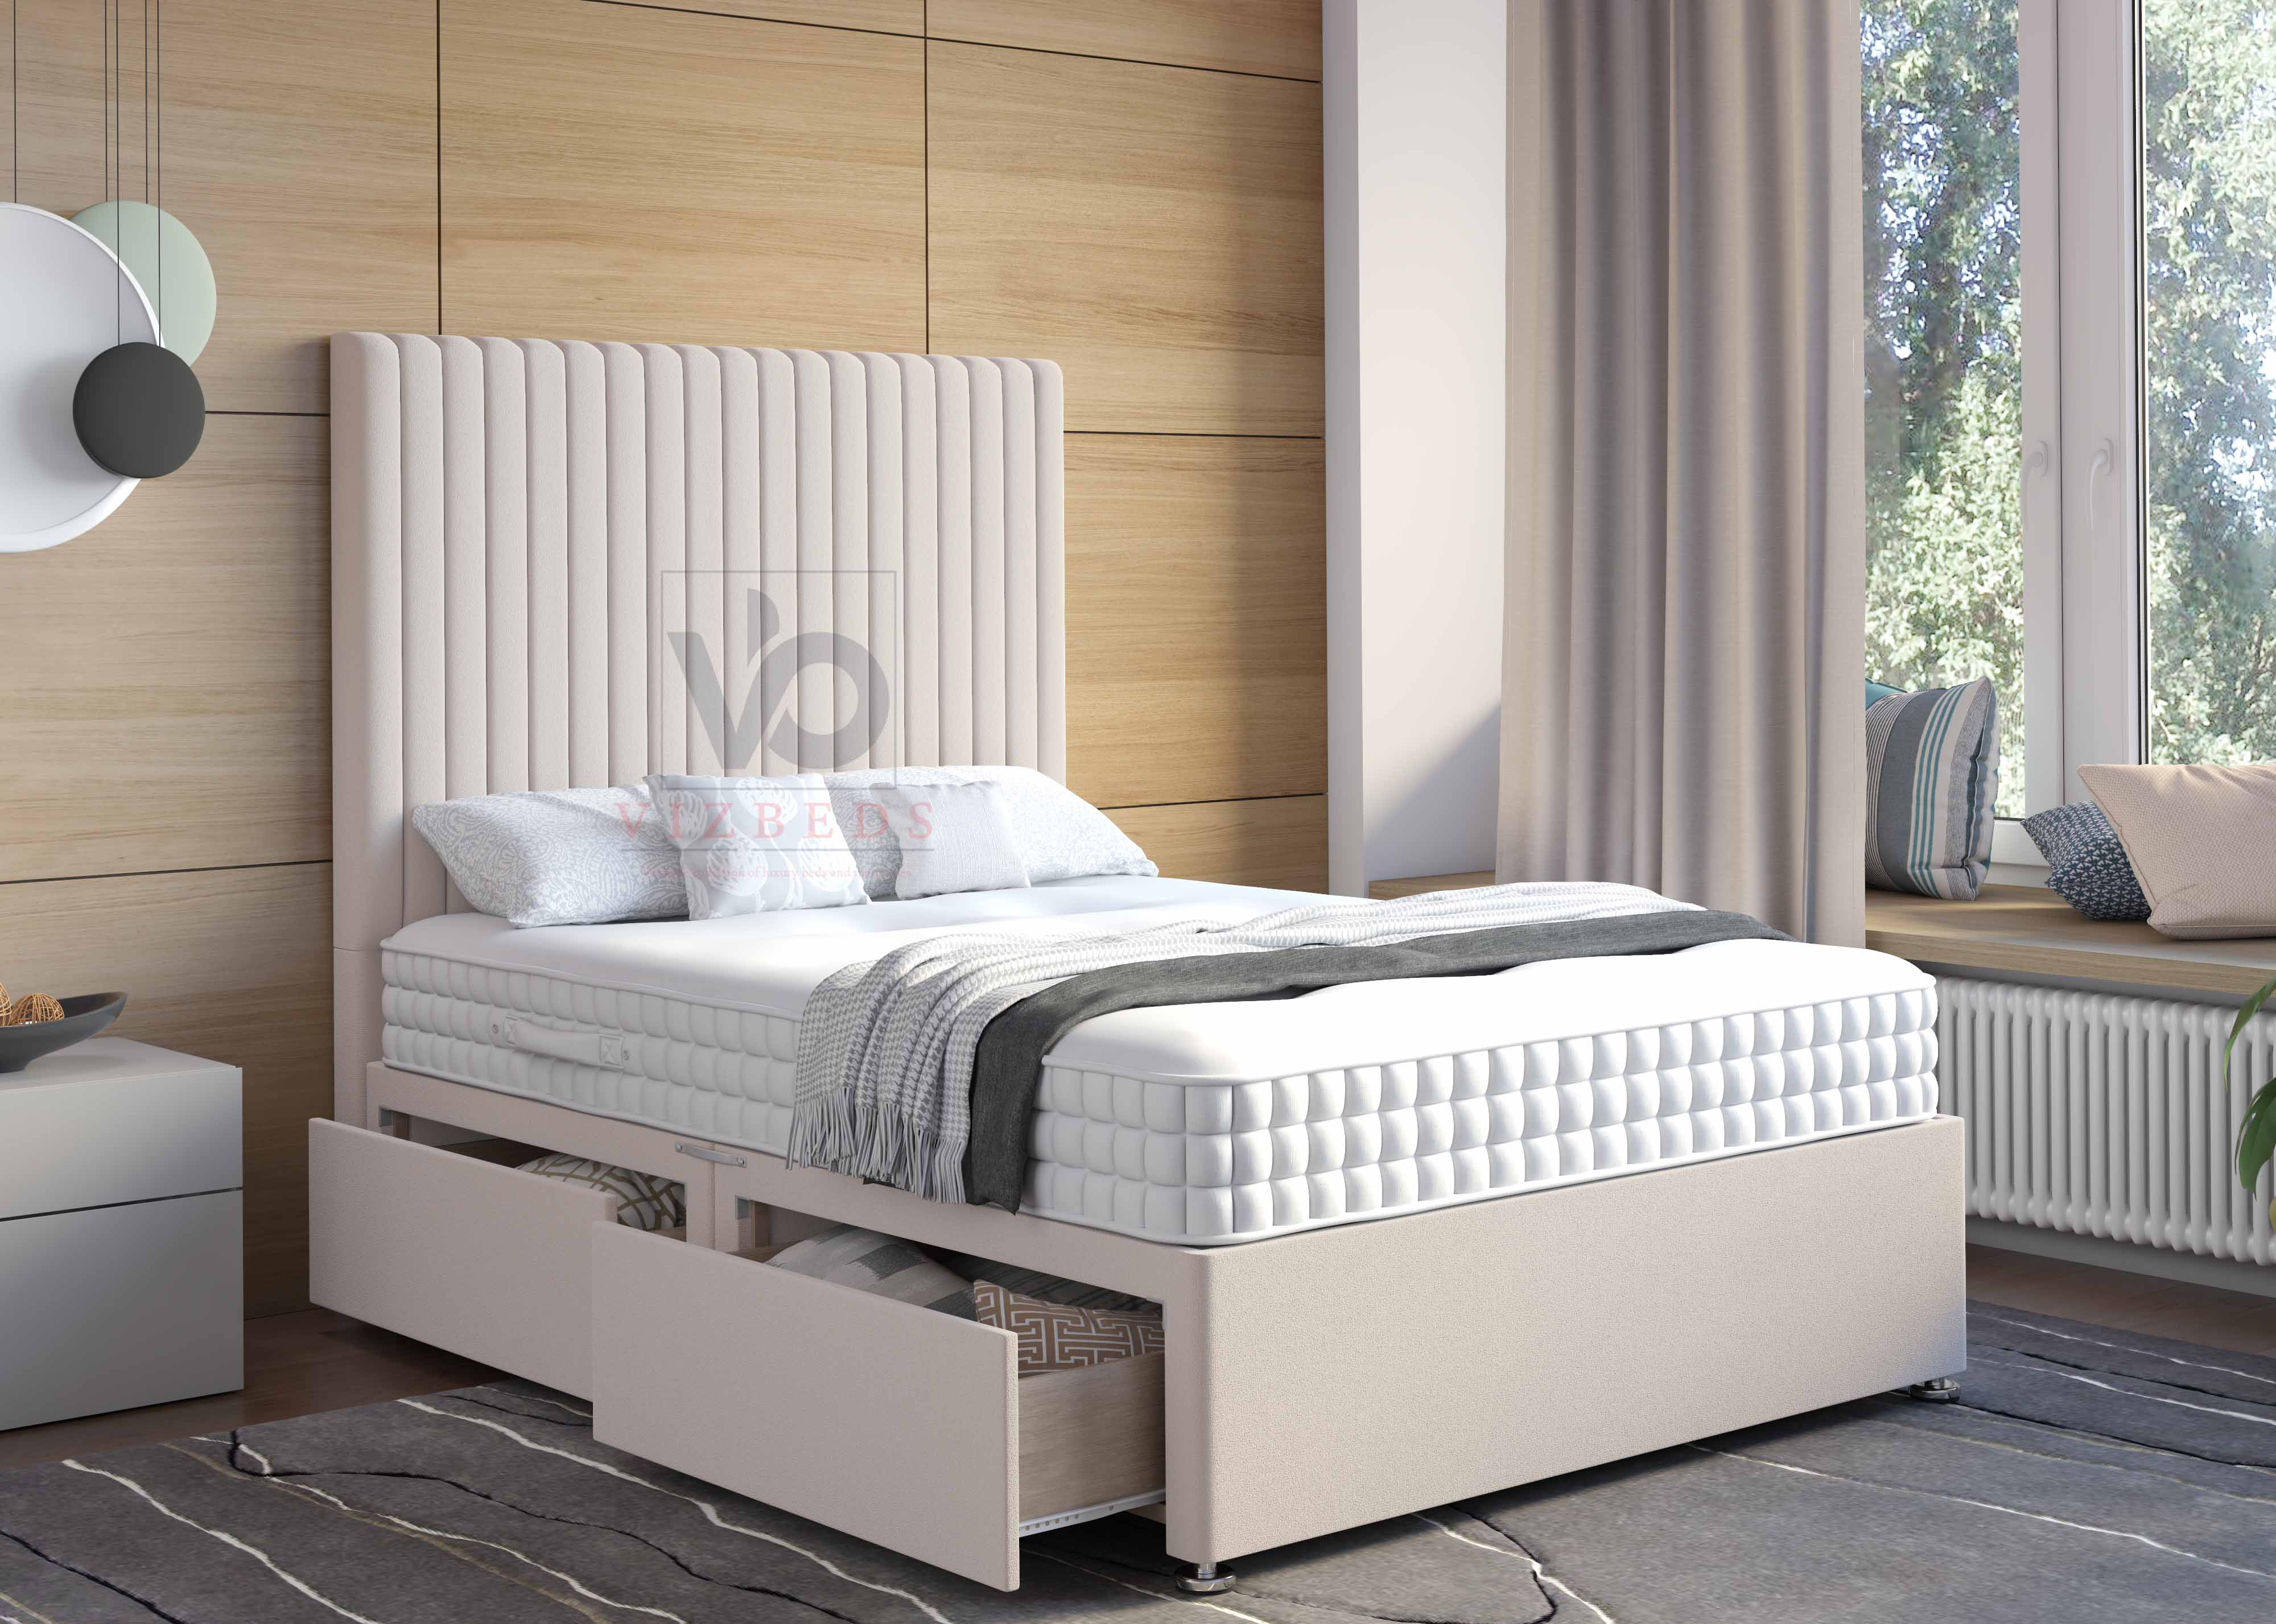 02- Divan Bed With Luxury Tall 54" Floor Standing Headboard